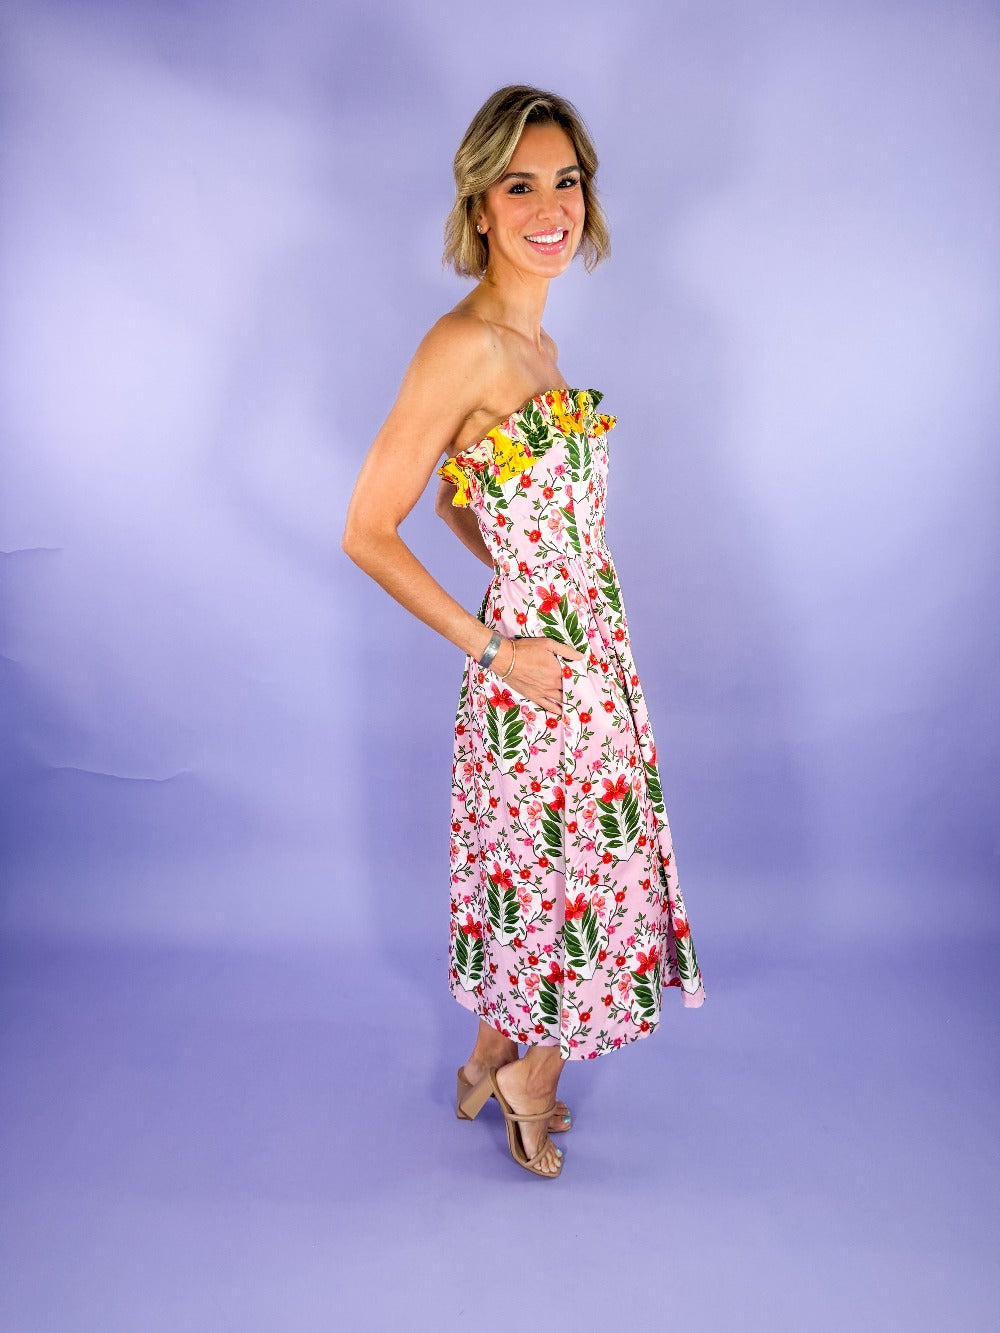 Catherine Pink Bouquet Strapless Dress Alden Adair brand